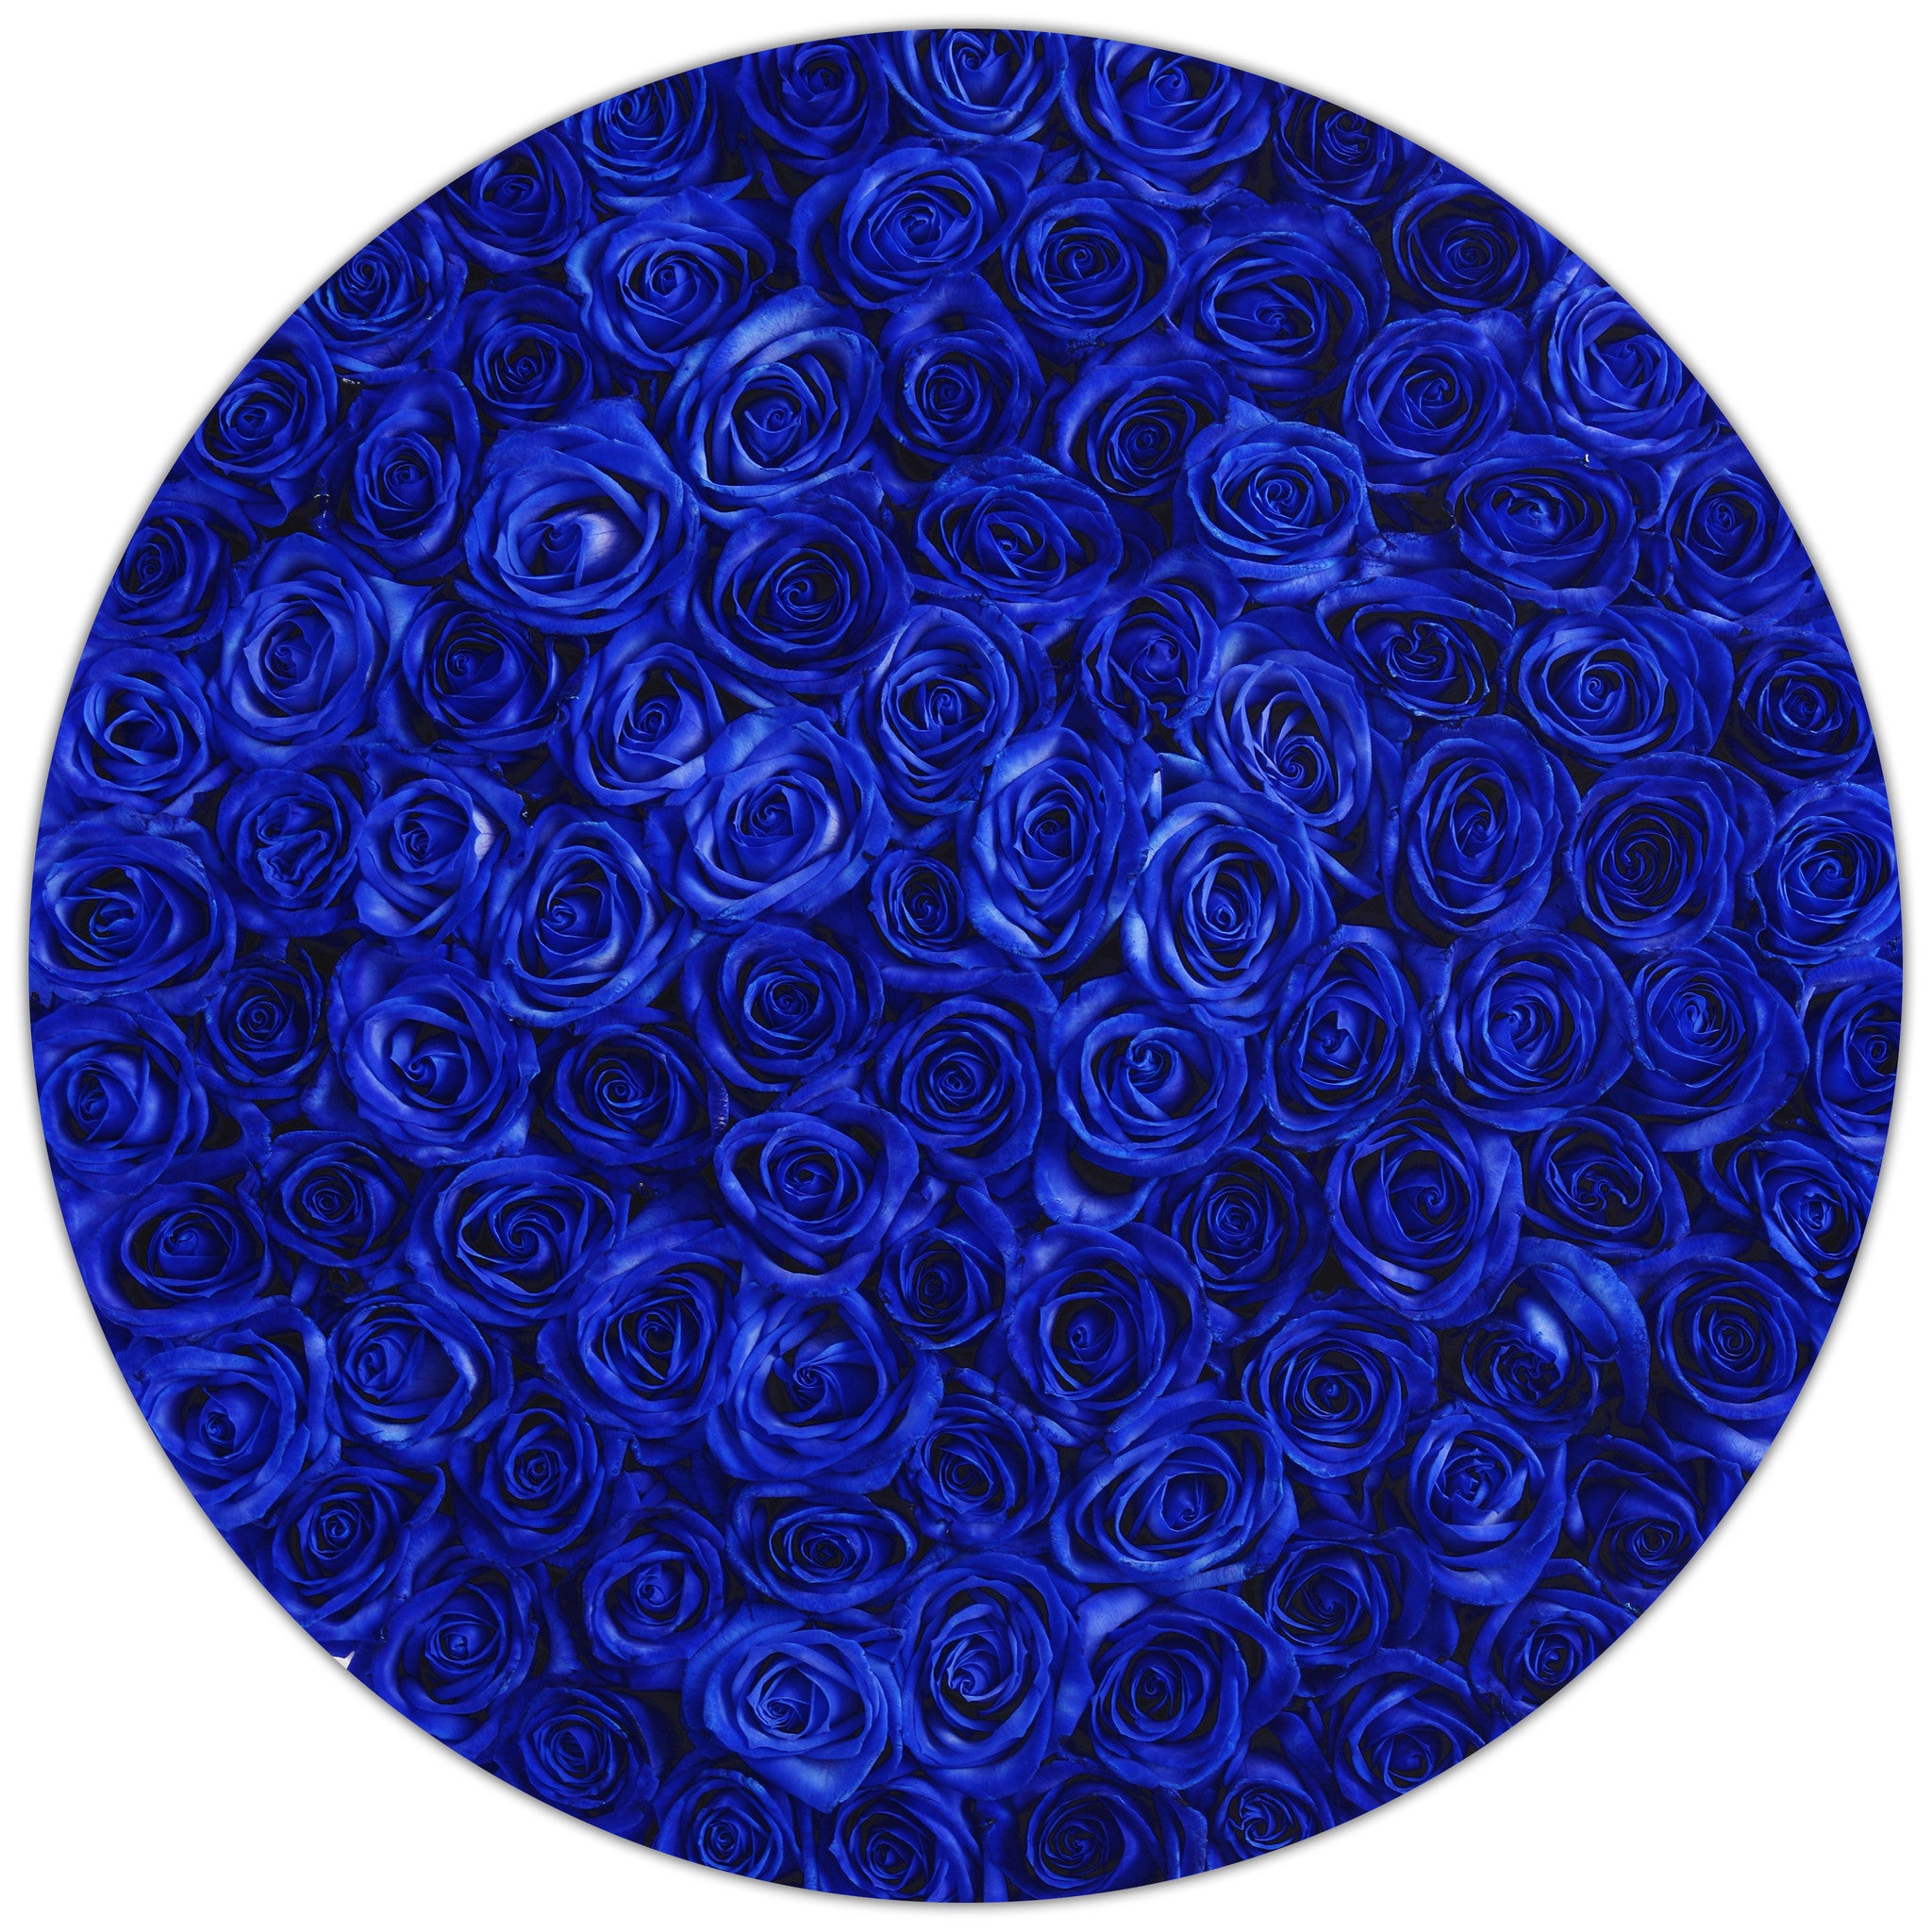 The Million - Blue Roses - White Box - The Million Roses Budapest